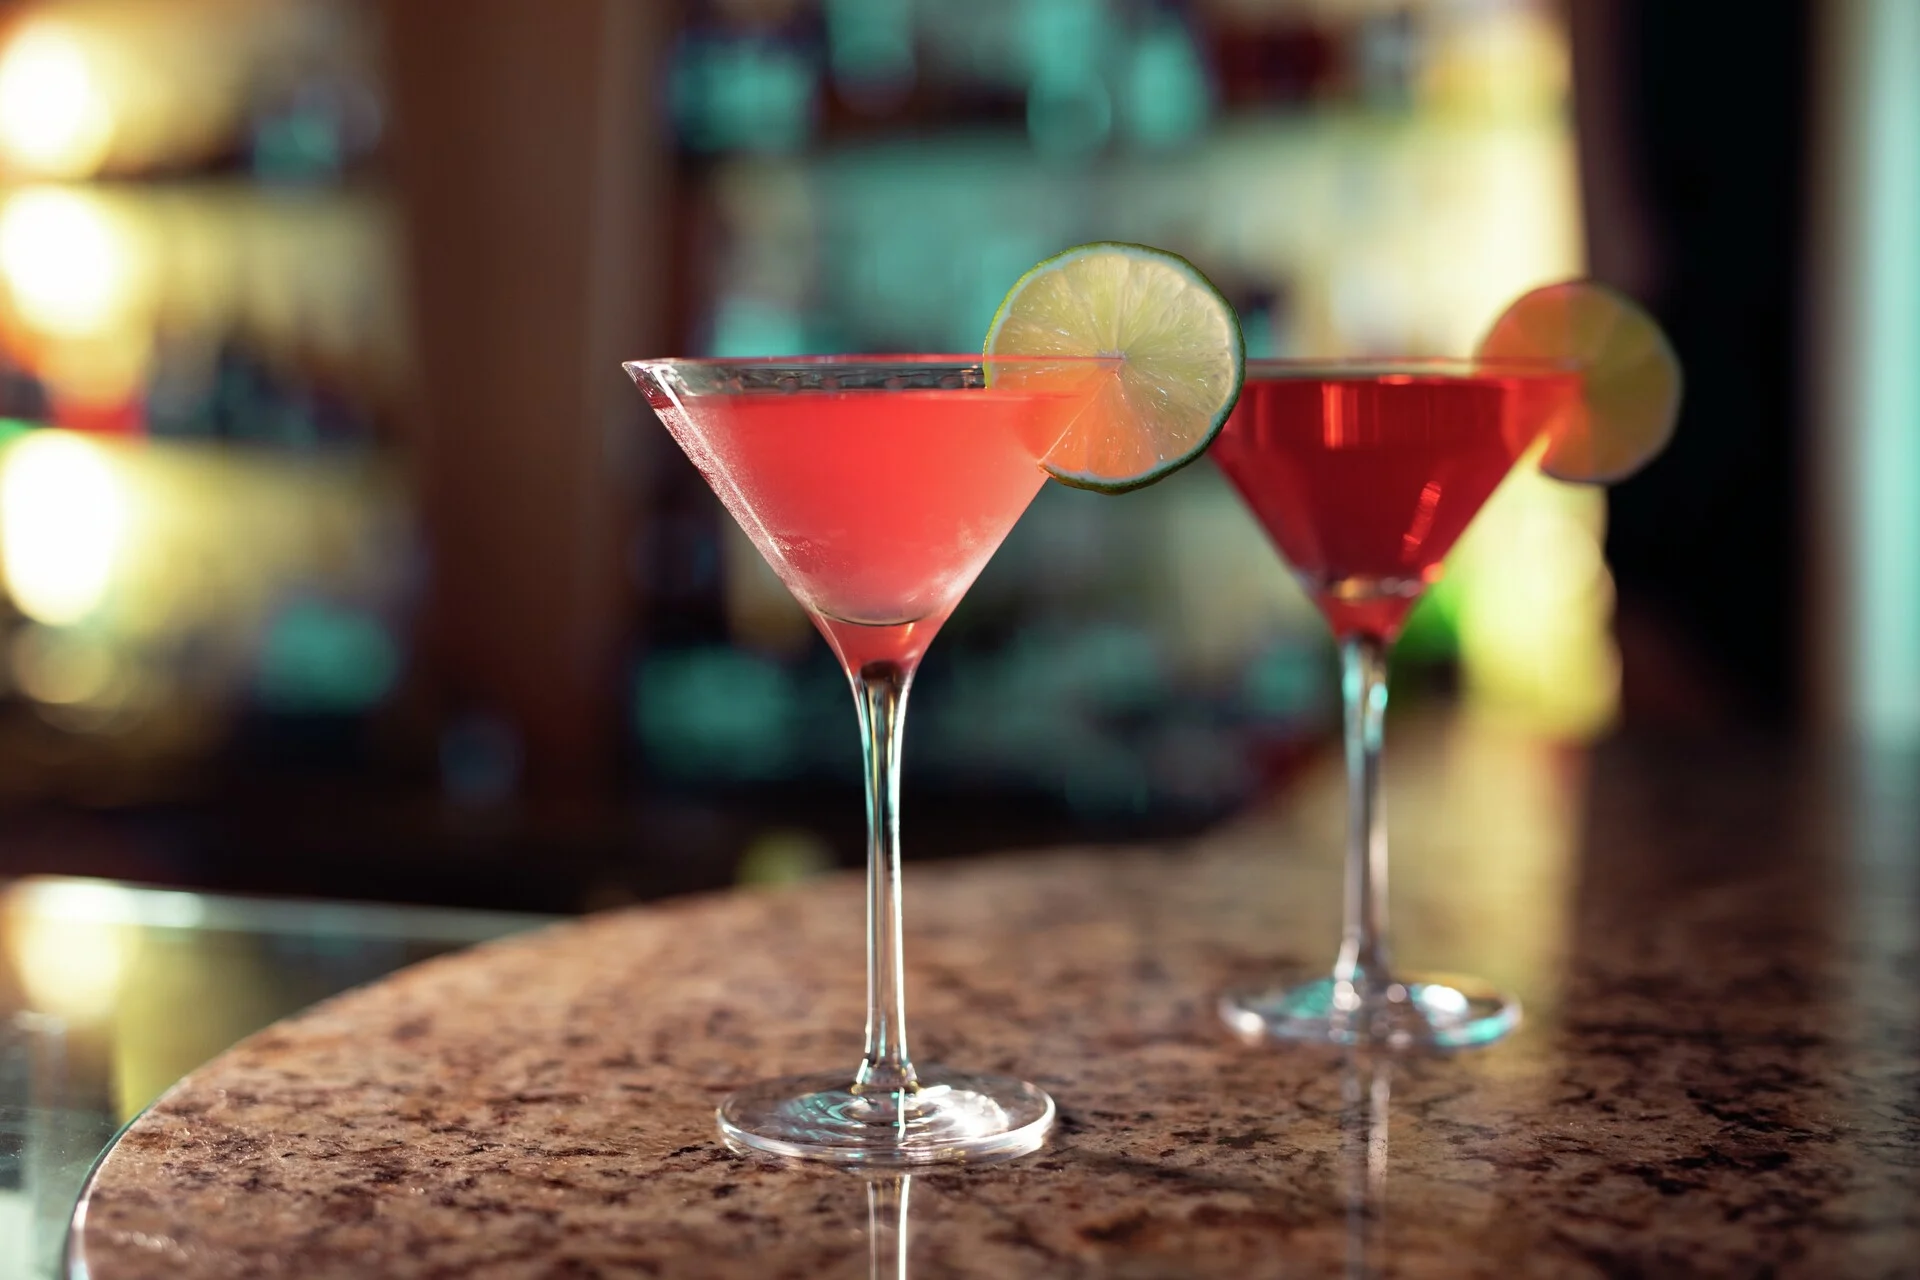 Cocktails at the Explorer Bar & Lounge